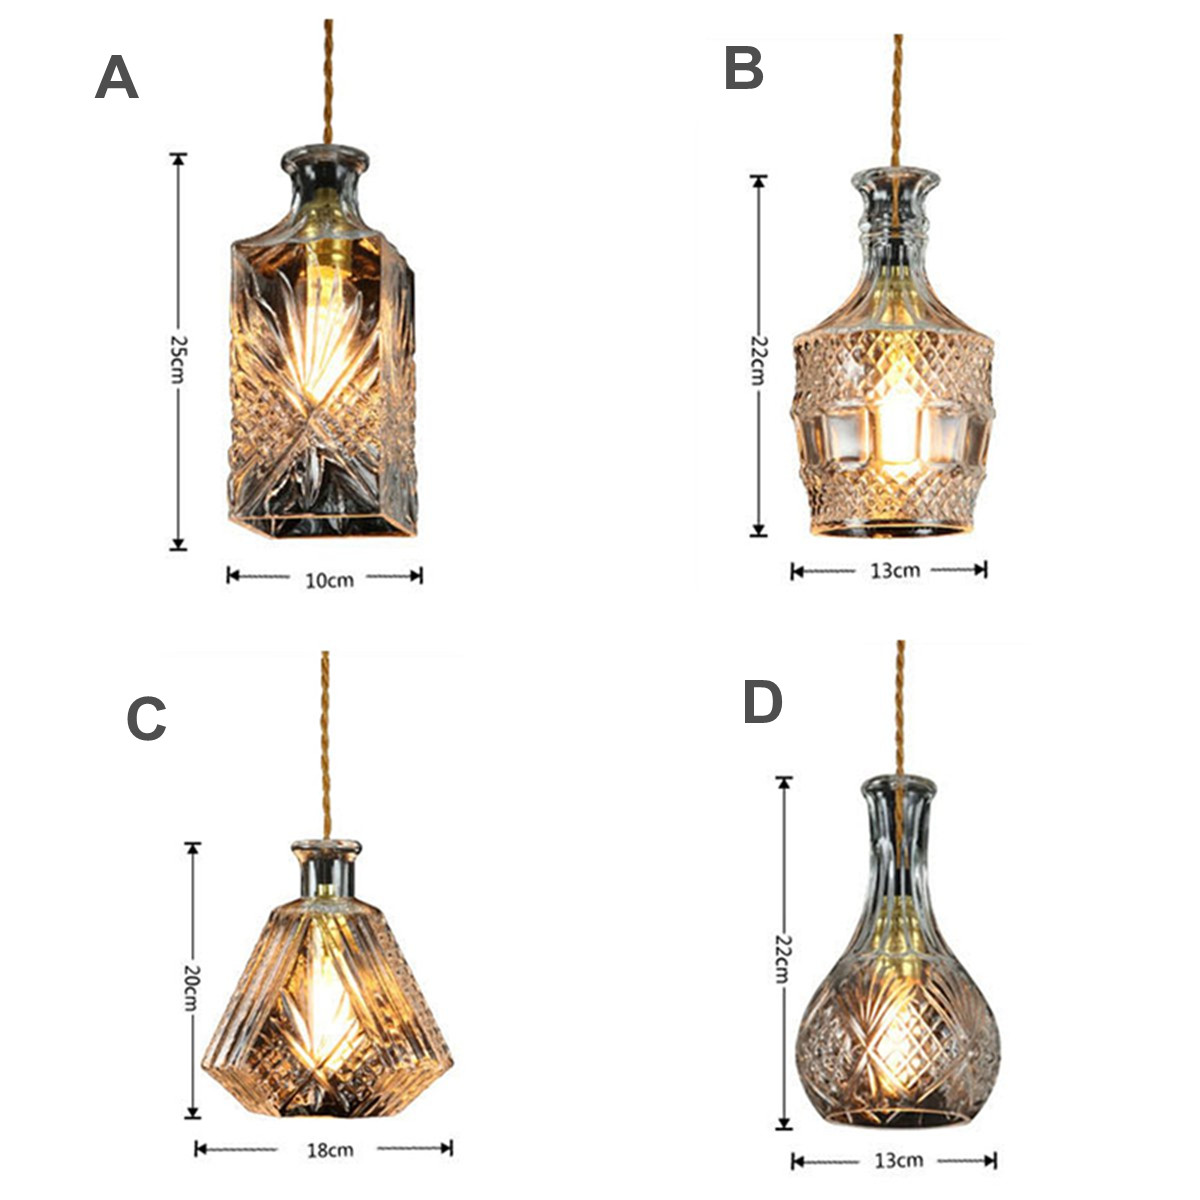 Vintage-Decanter-Bottle-Pendant-Ceiling-Light-Chandelier-Lamp-Fixture-Home-Decor-1634446-6